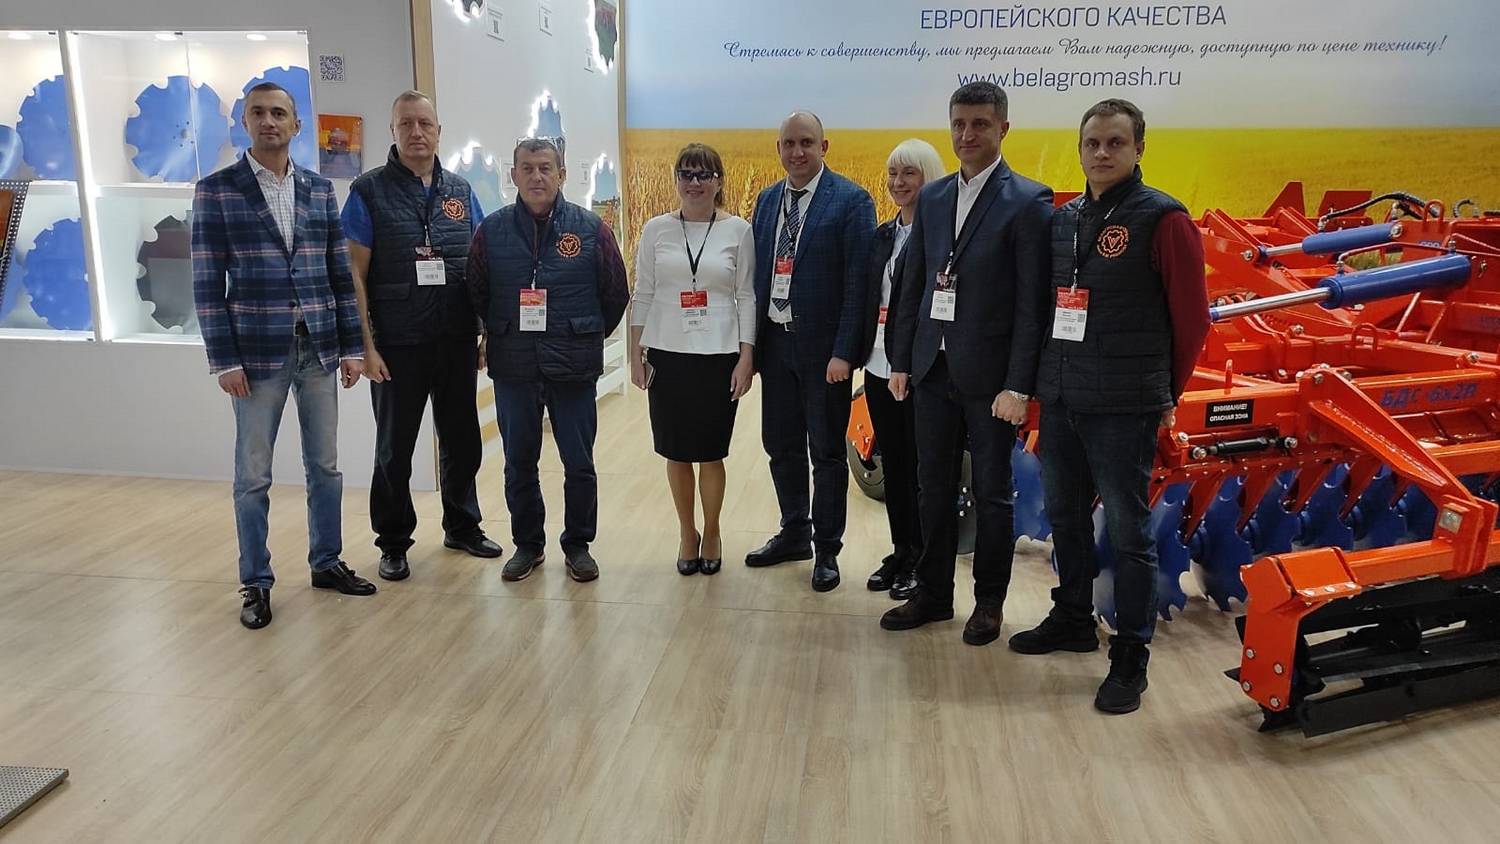 Завод «Белагромаш-Сервис им. В.М. Рязанова» представил свою продукцию на Международной выставке сельхозтехники и оборудования АГРОСАЛОН 2022.